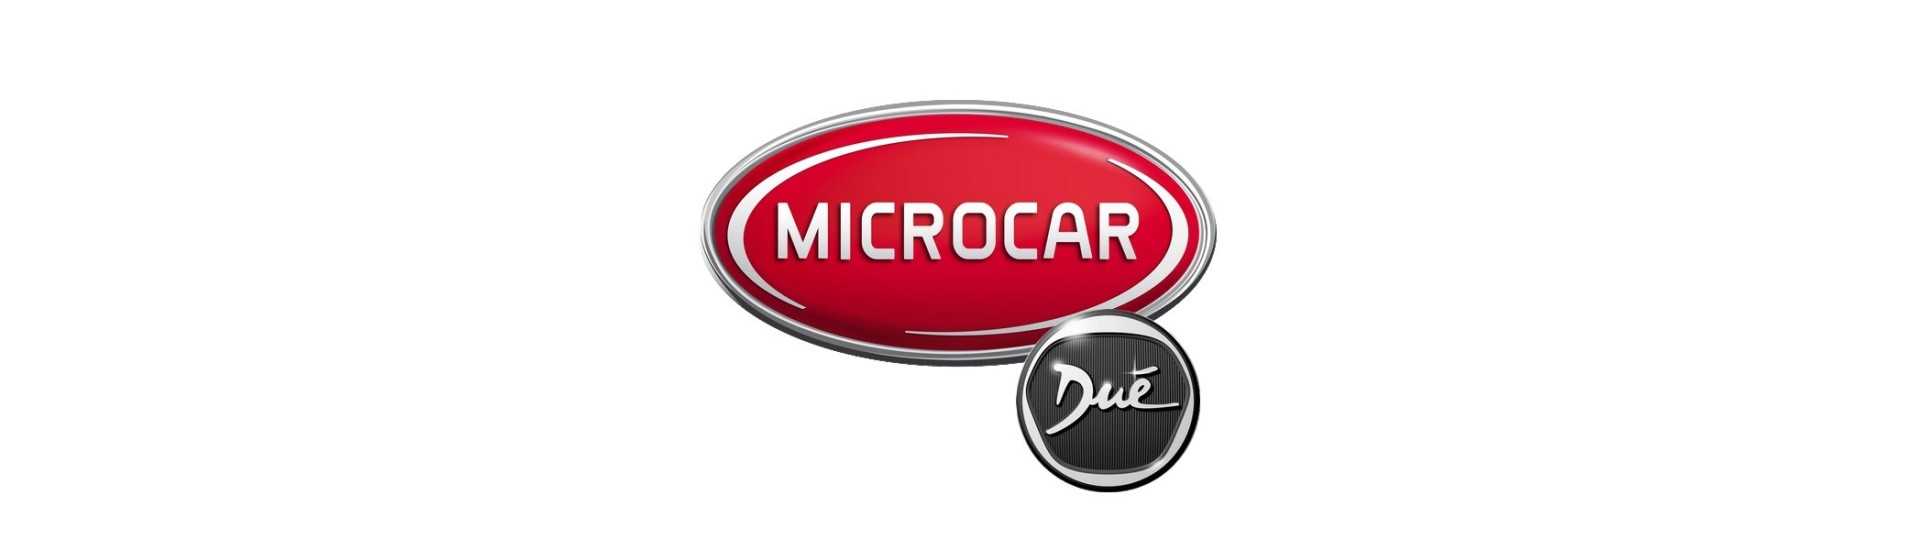 Indicatore del freno al miglior prezzo dell'auto senza un permesso Microcar Dué